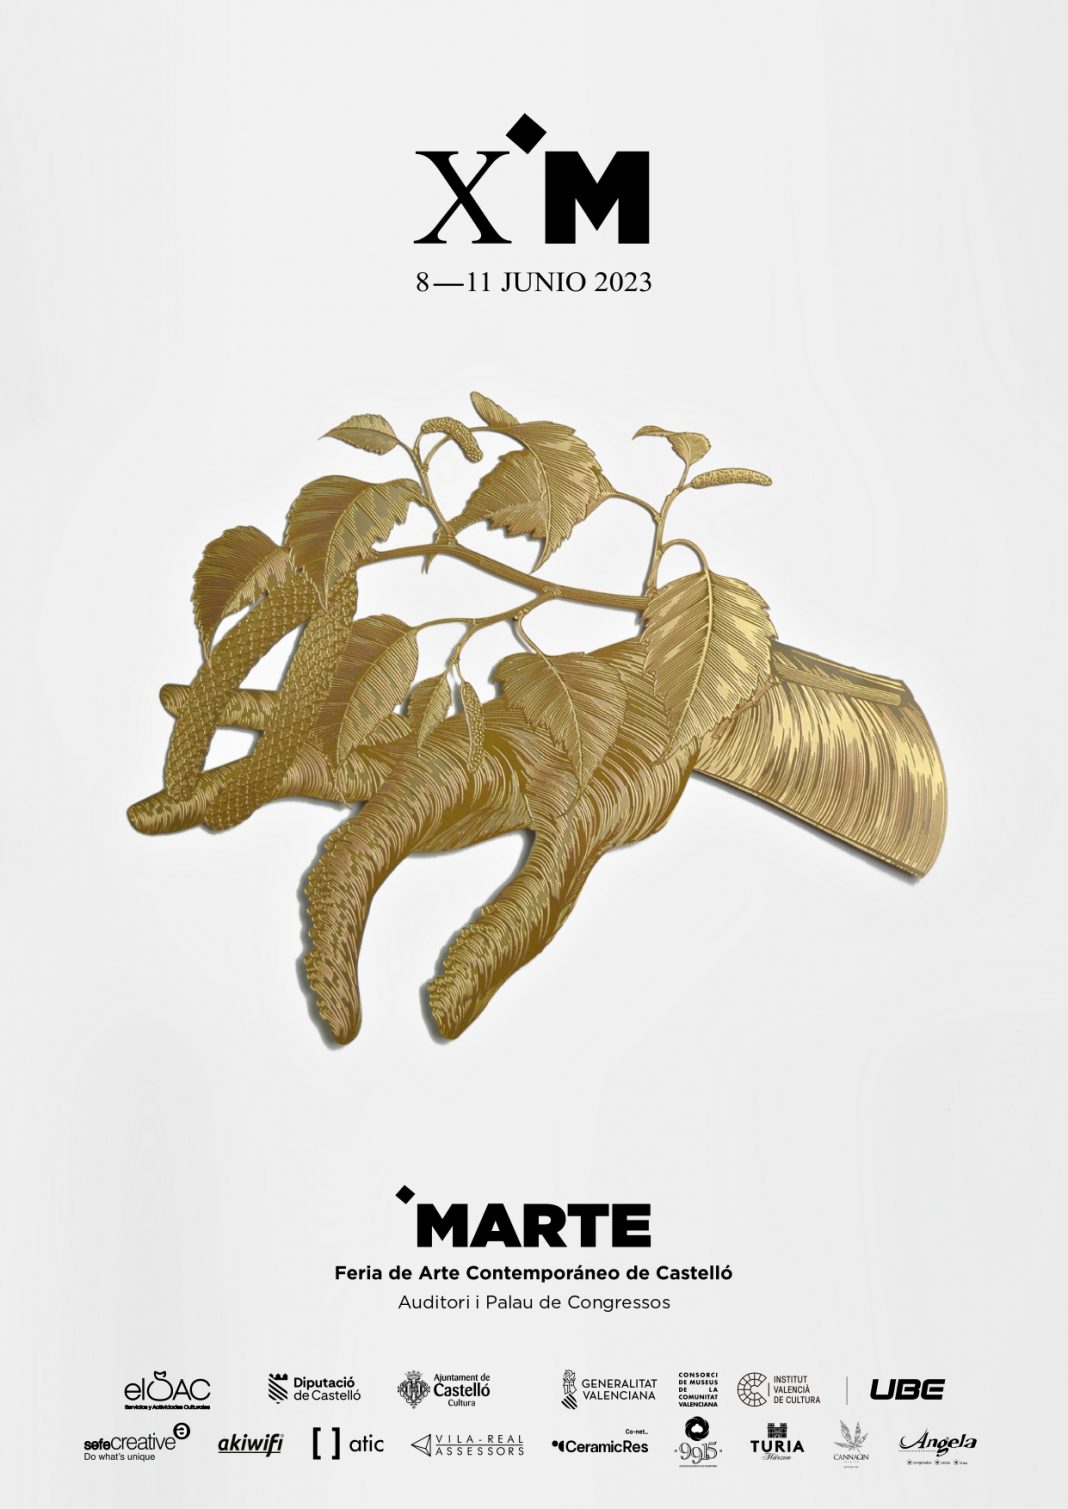 X MARTE feria de Arte Contemporáneo de Castelló 2023https://www.exibart.es/repository/media/formidable/11/img/2e6/POSTER-X-MARTE-2023-_page-0001-1068x1509.jpg